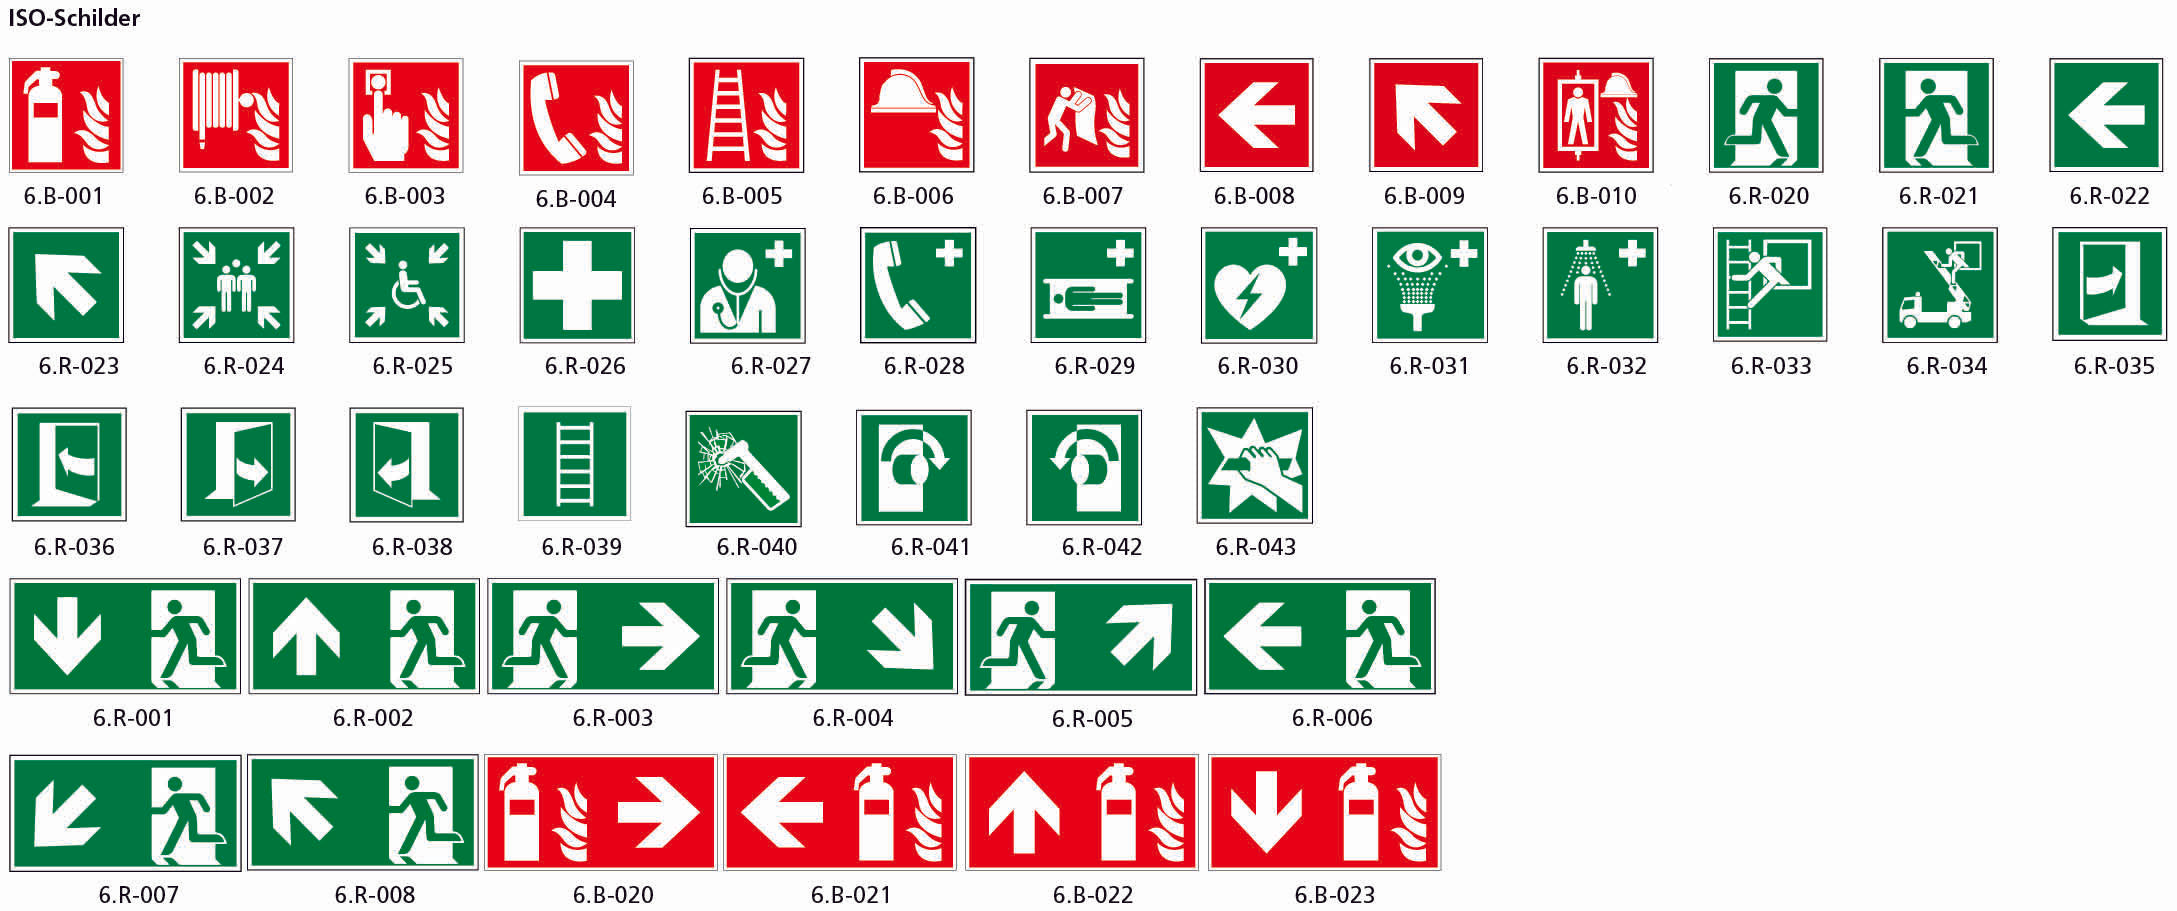 Fahnenschild doppelseitig, Rettungs- und Brandschutzzeichen, KU, 300 x 150 mm, gemäss Logobibliothek